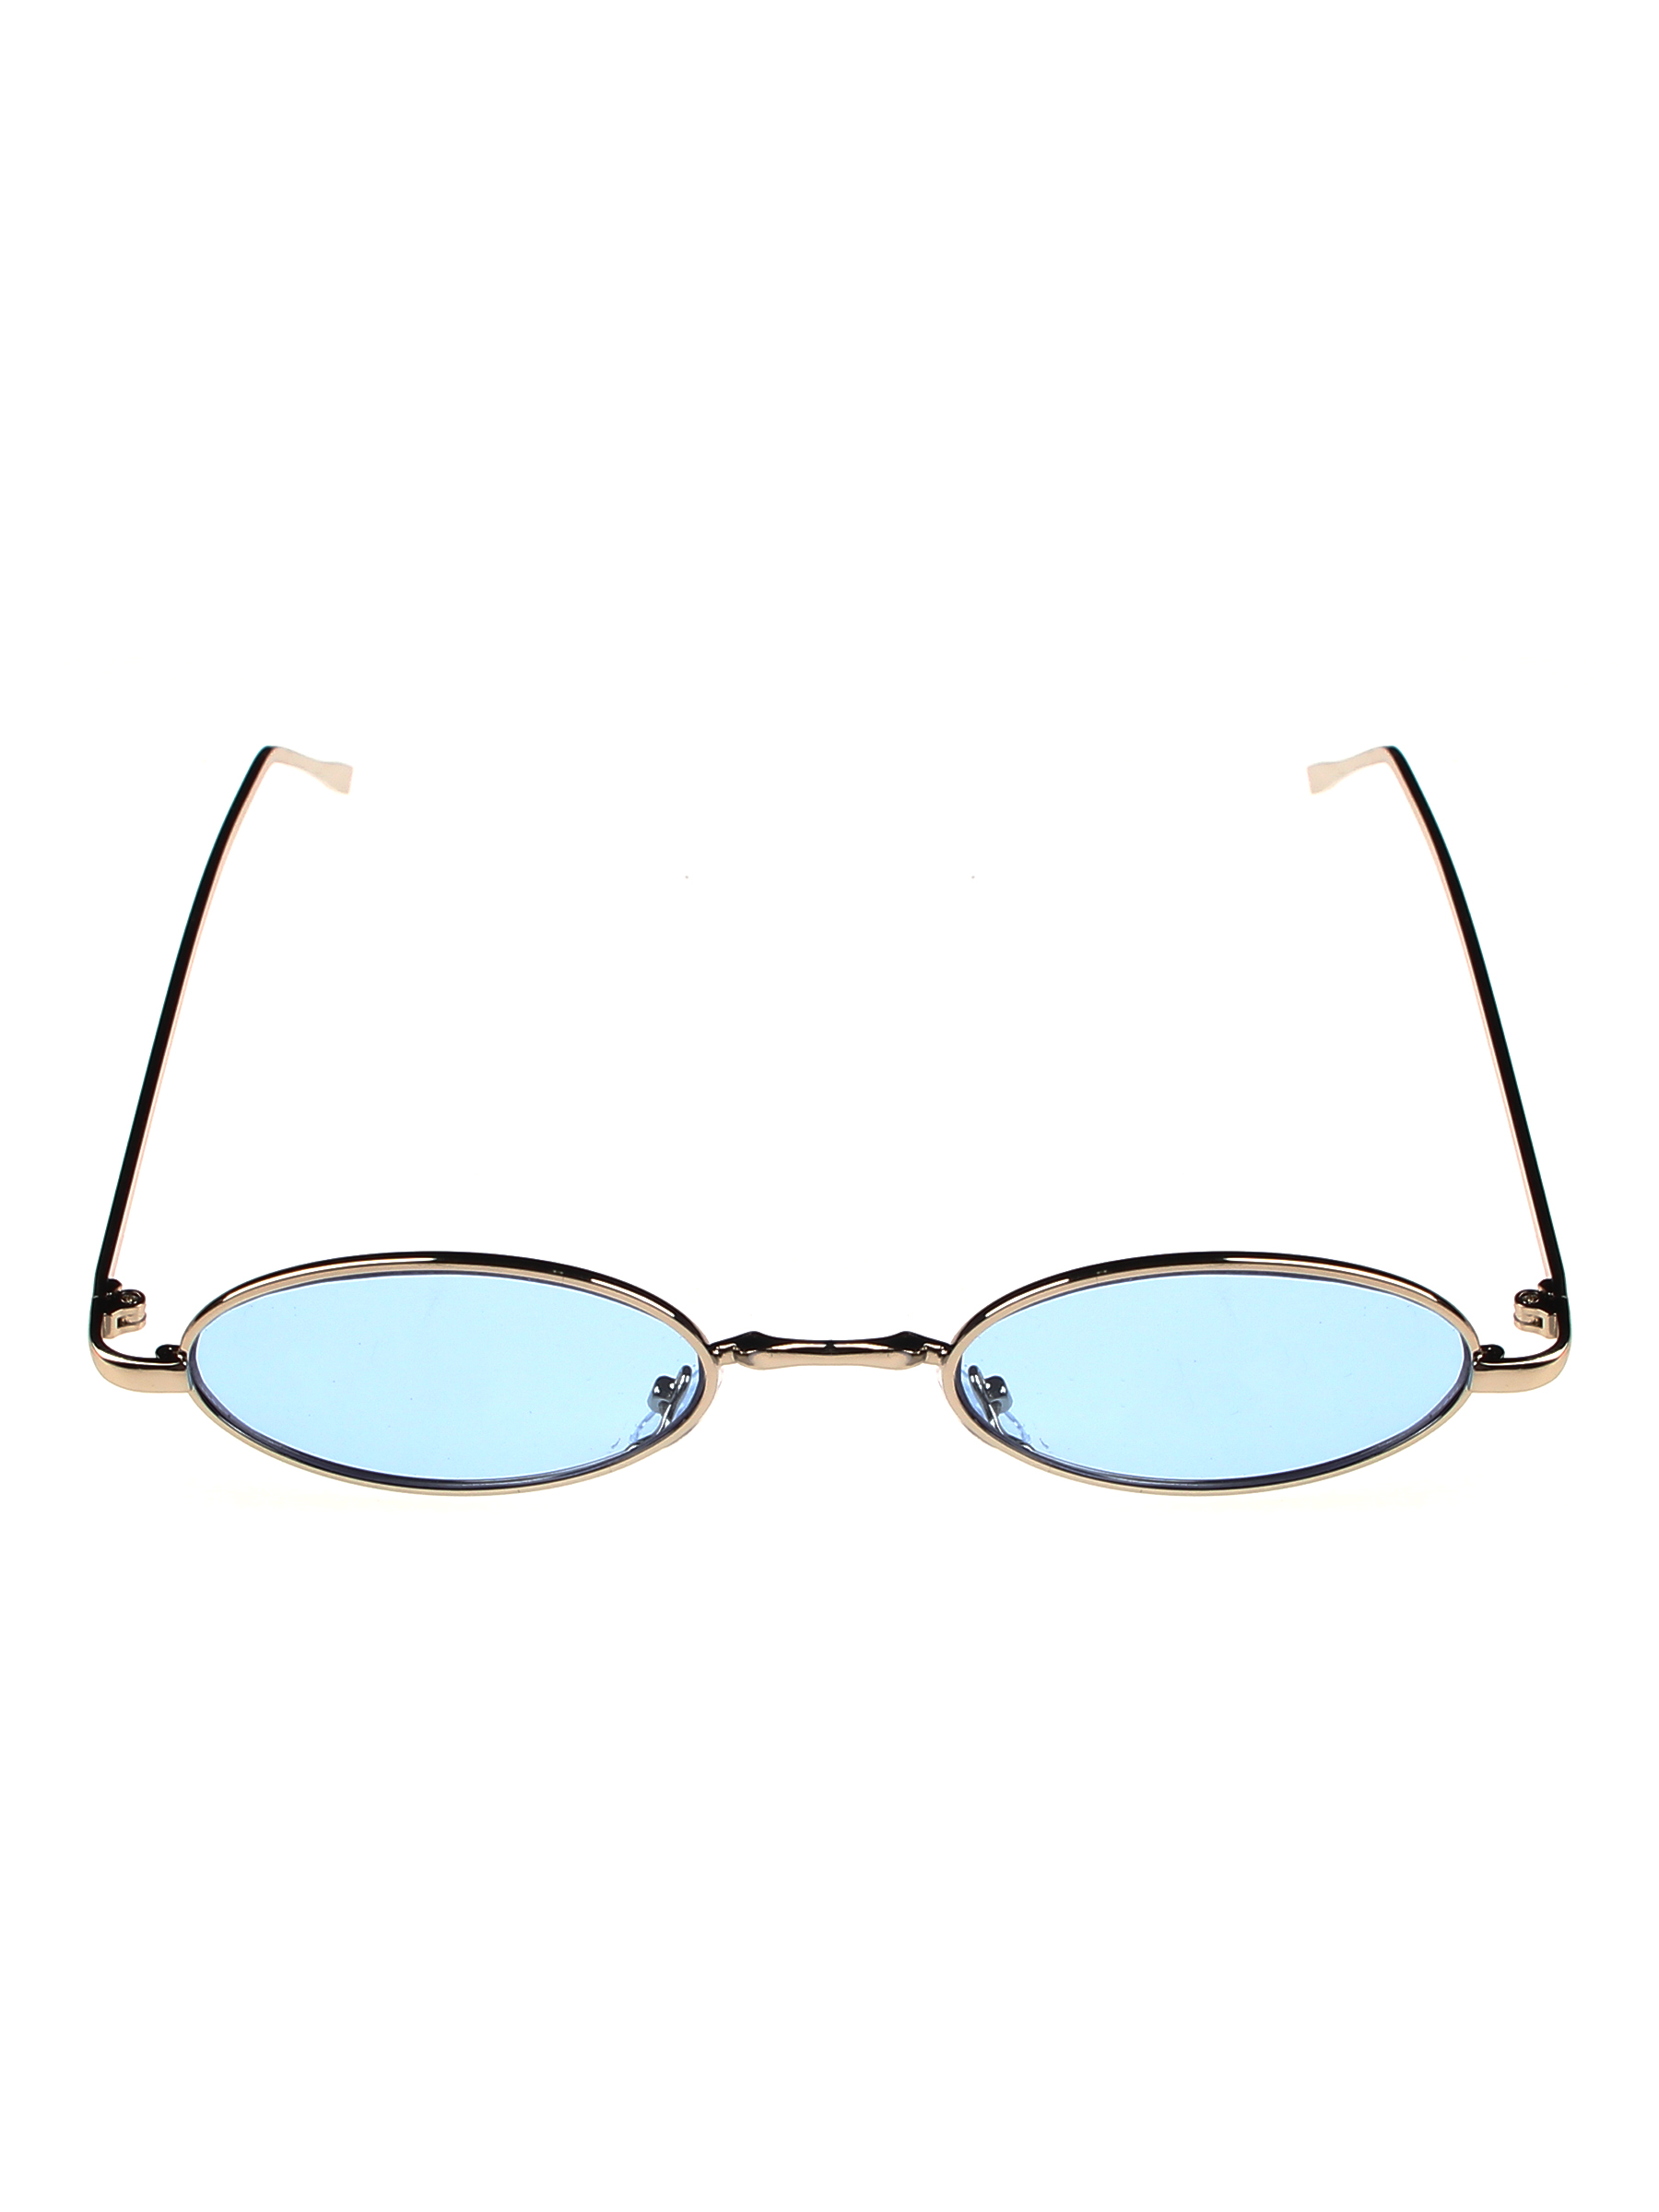 Солнцезащитные очки женские Pretty Mania NDP029 голубые